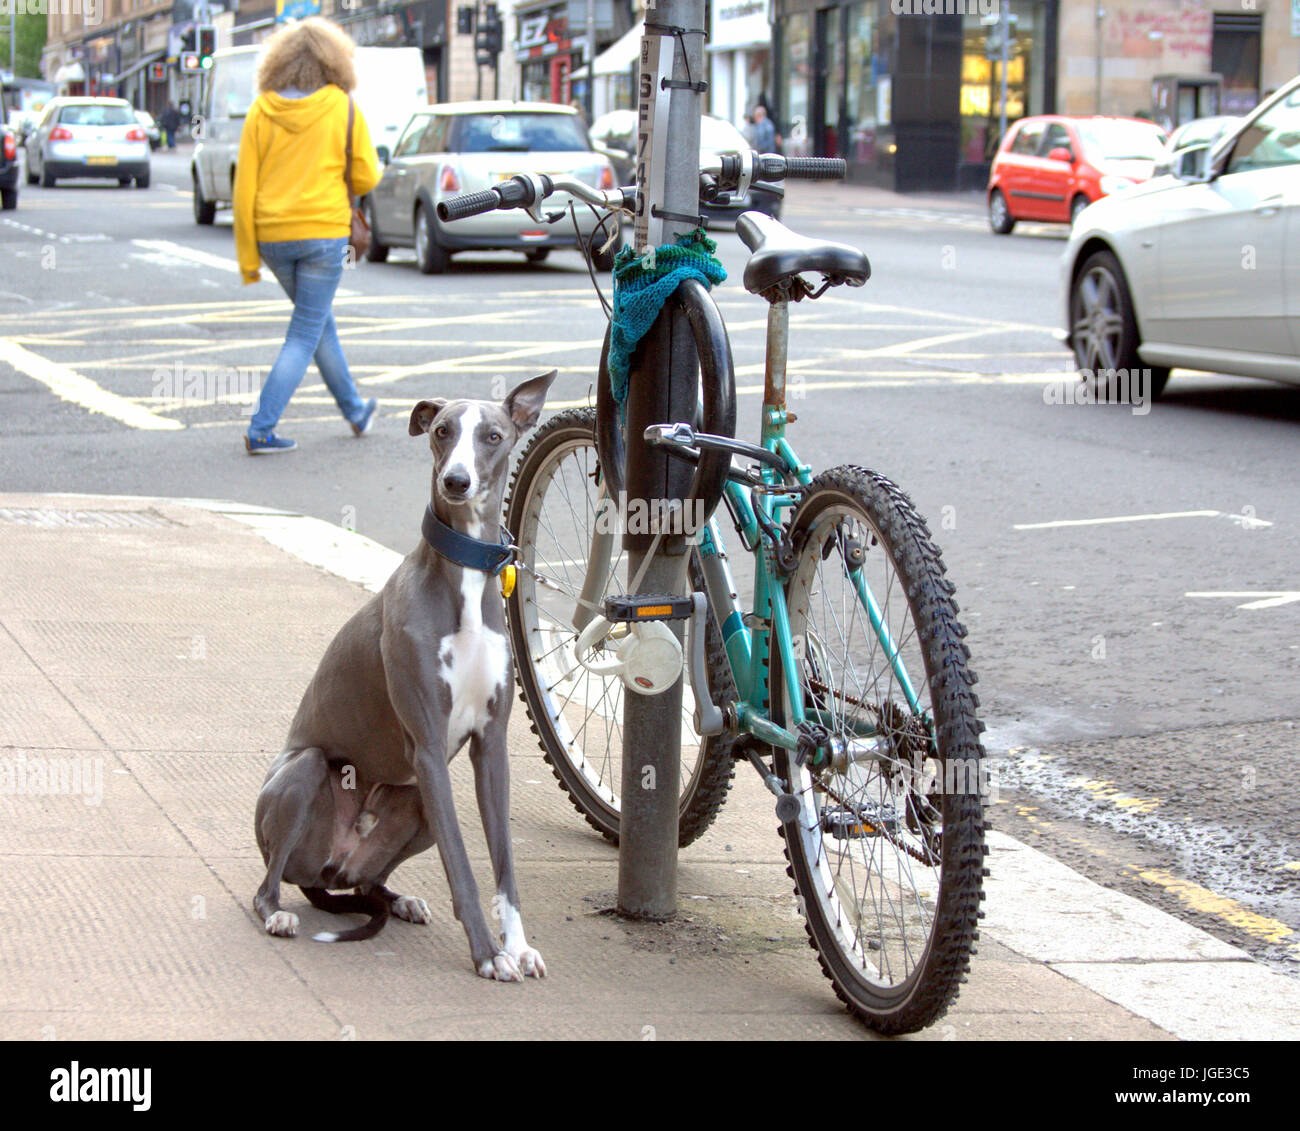 humorous funny dog and bicycle bike ha ha picture Stock Photo